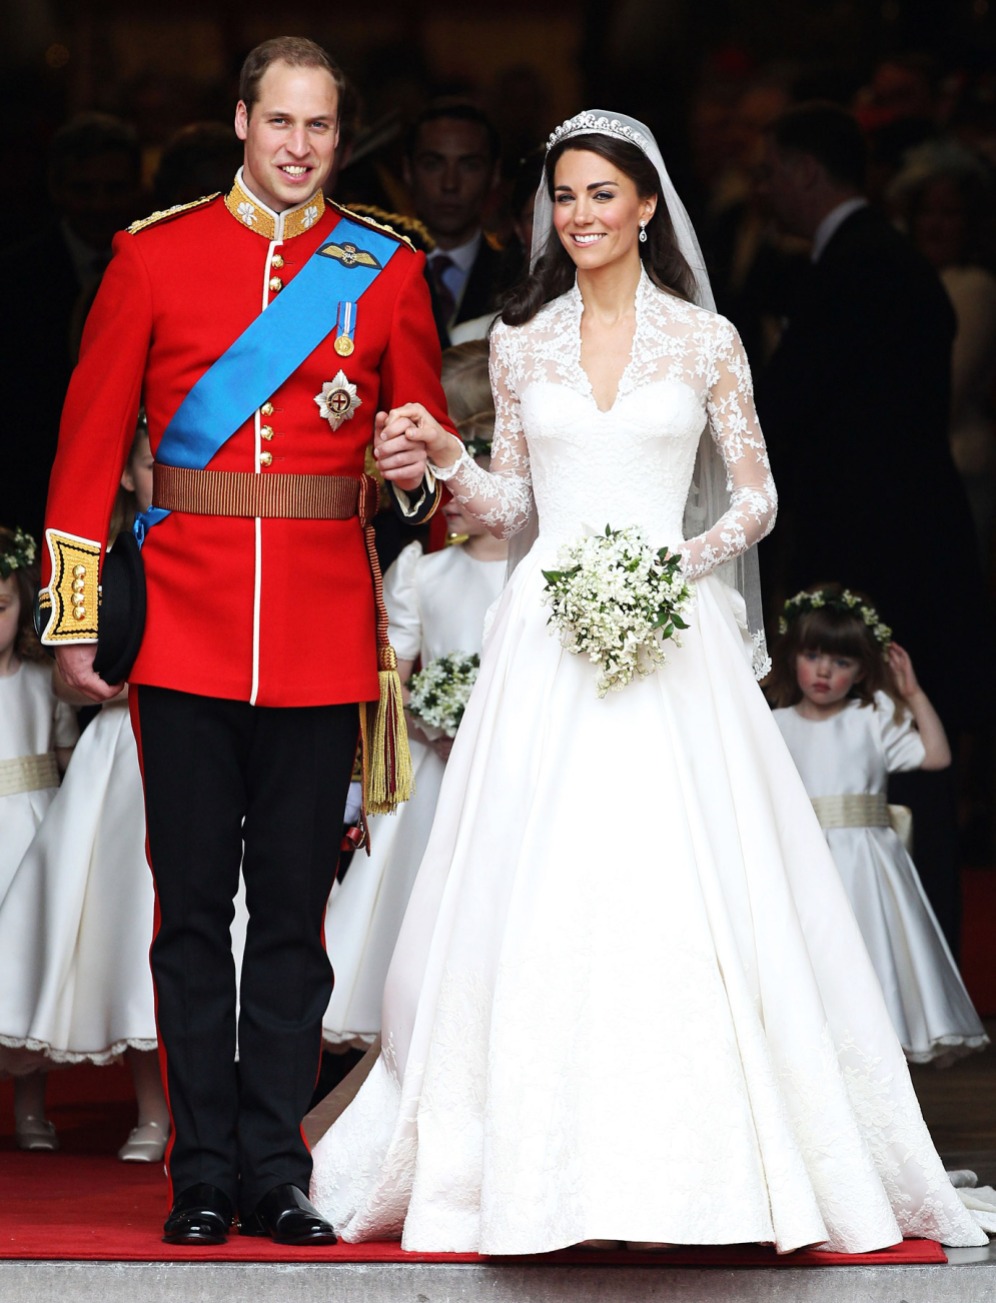 infine, dovevo fare un piccolo accenno al look nuziale di William e Kate... ma non mi interessa tanto l'abito di Kate, quanto quello del principe William che, essendo naturalmente un militare, si è sposato in alta uniforme.